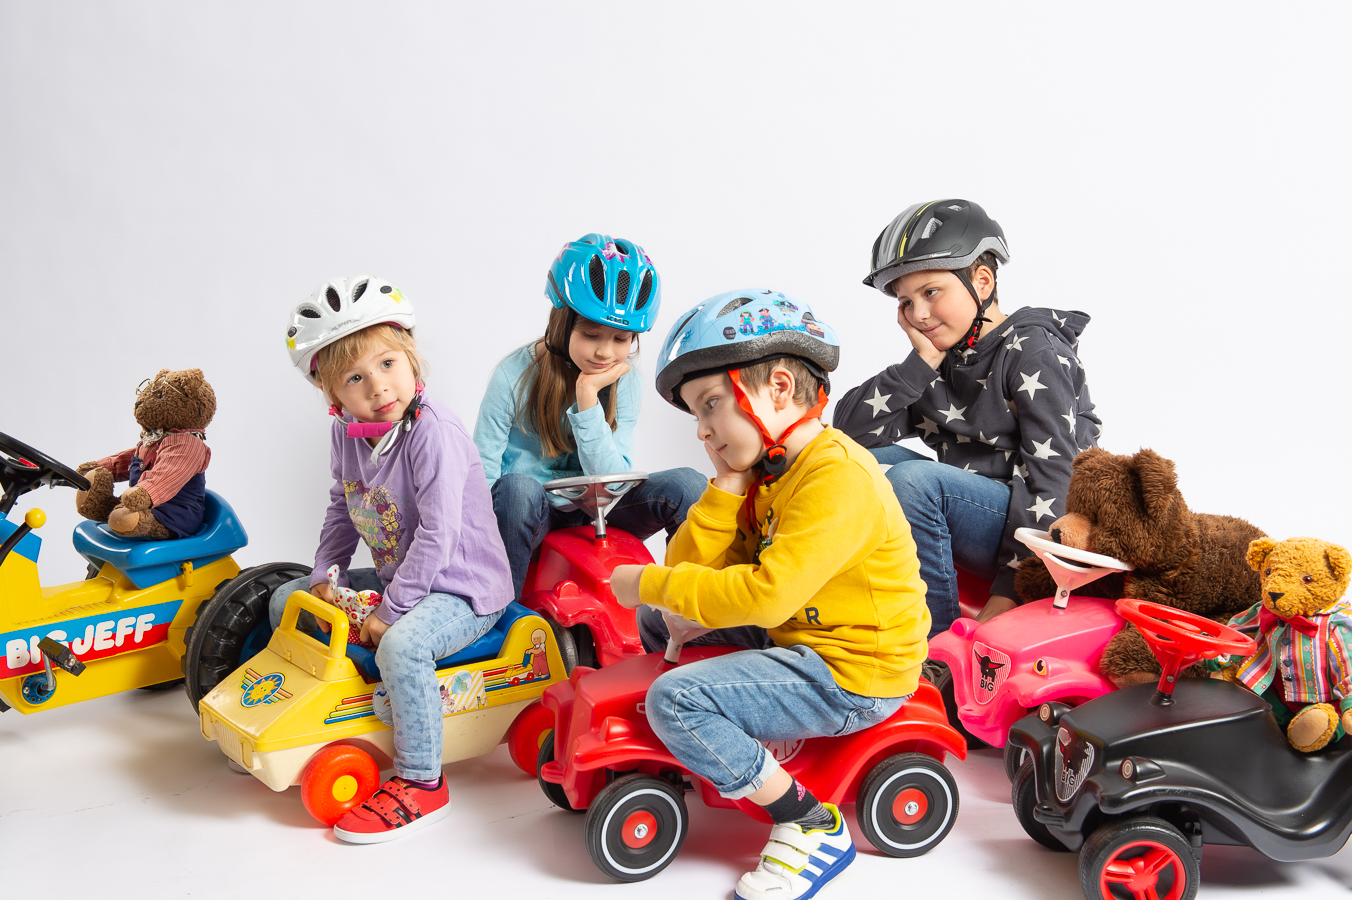 Kinder mit Bobbycars spielen Verkehrsstau